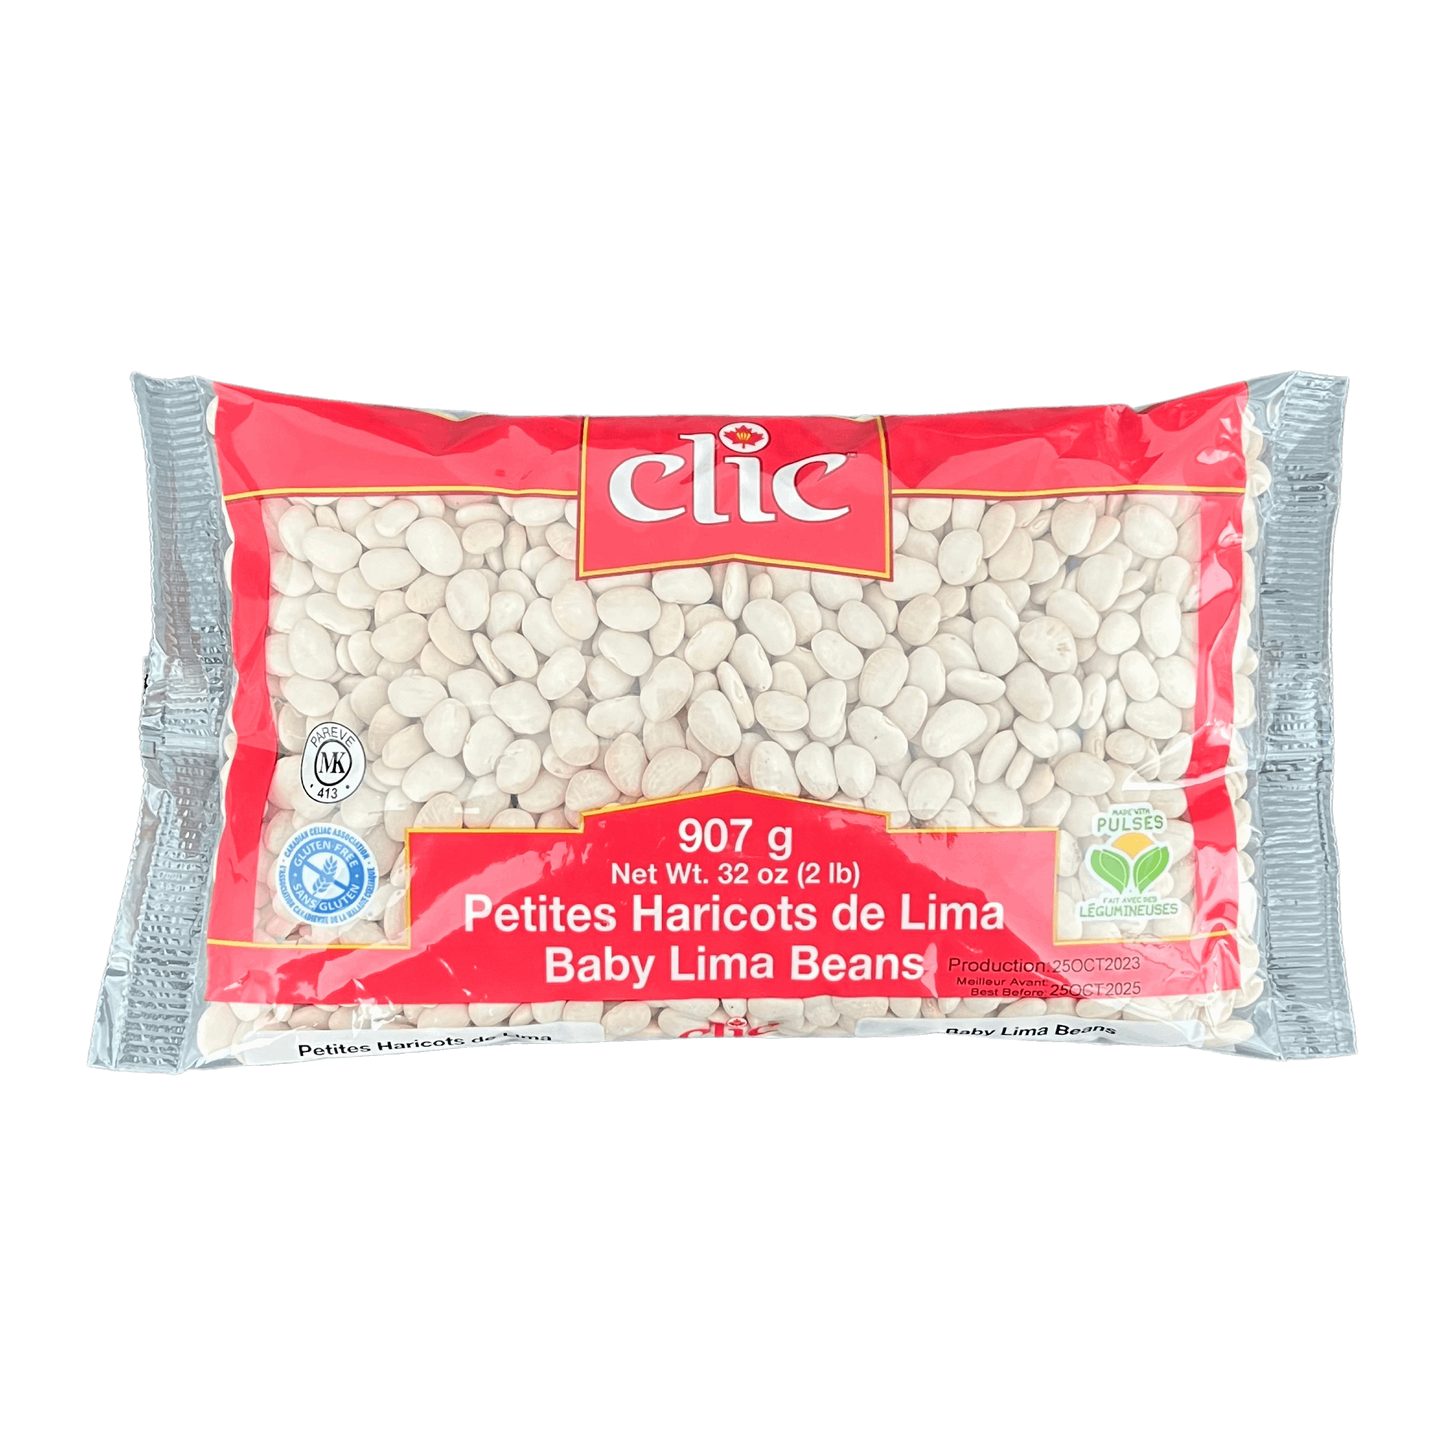 Clic Baby Lima Beans 907g Damaski